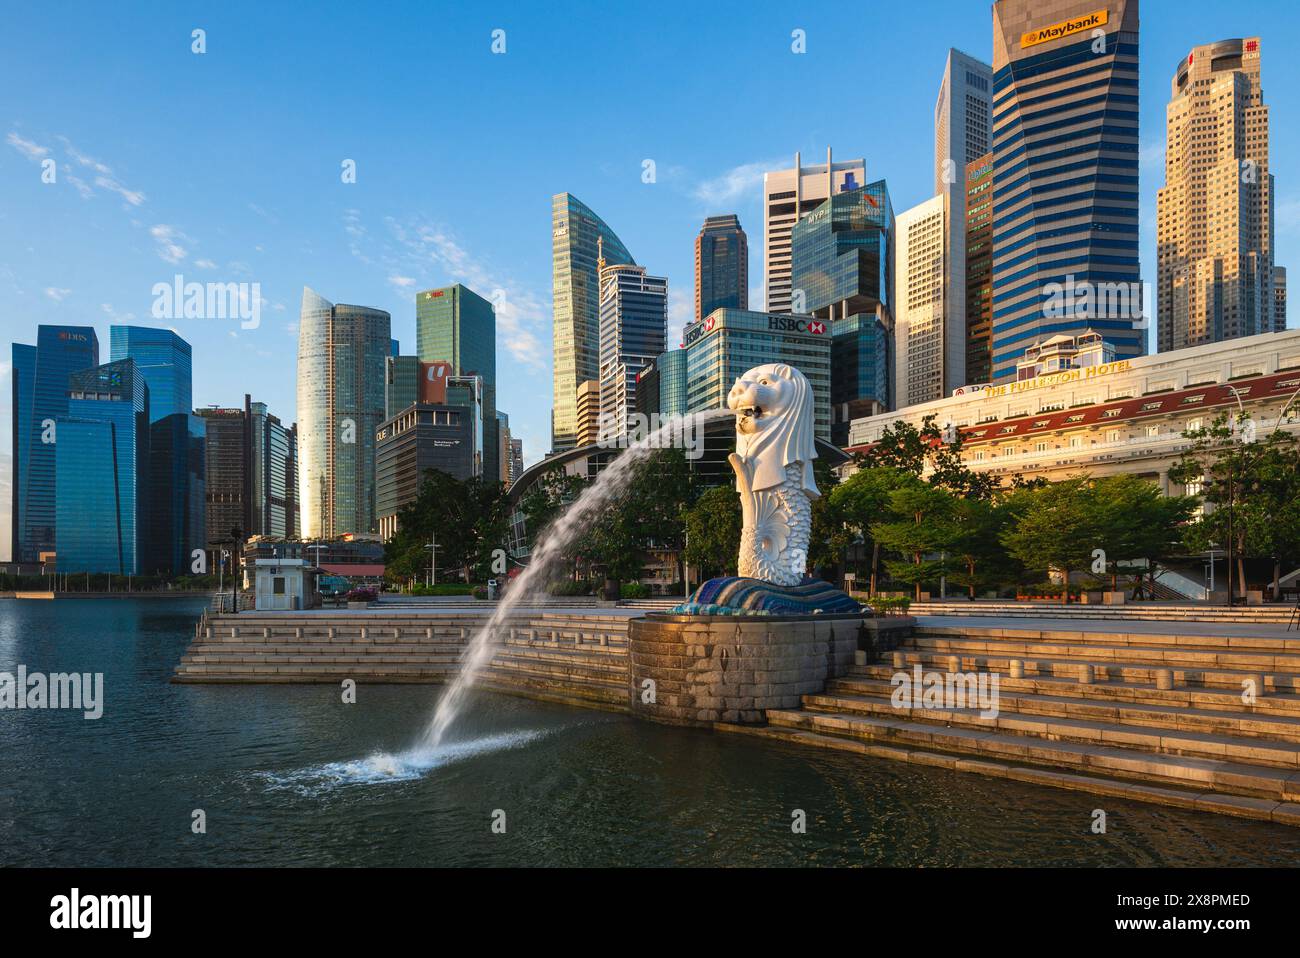 6 février 2020 : Merlion Statue, la mascotte officielle de Singapour, à Marina Bay à Singapour. C'est une créature mythique avec une tête de lion et le bod Banque D'Images